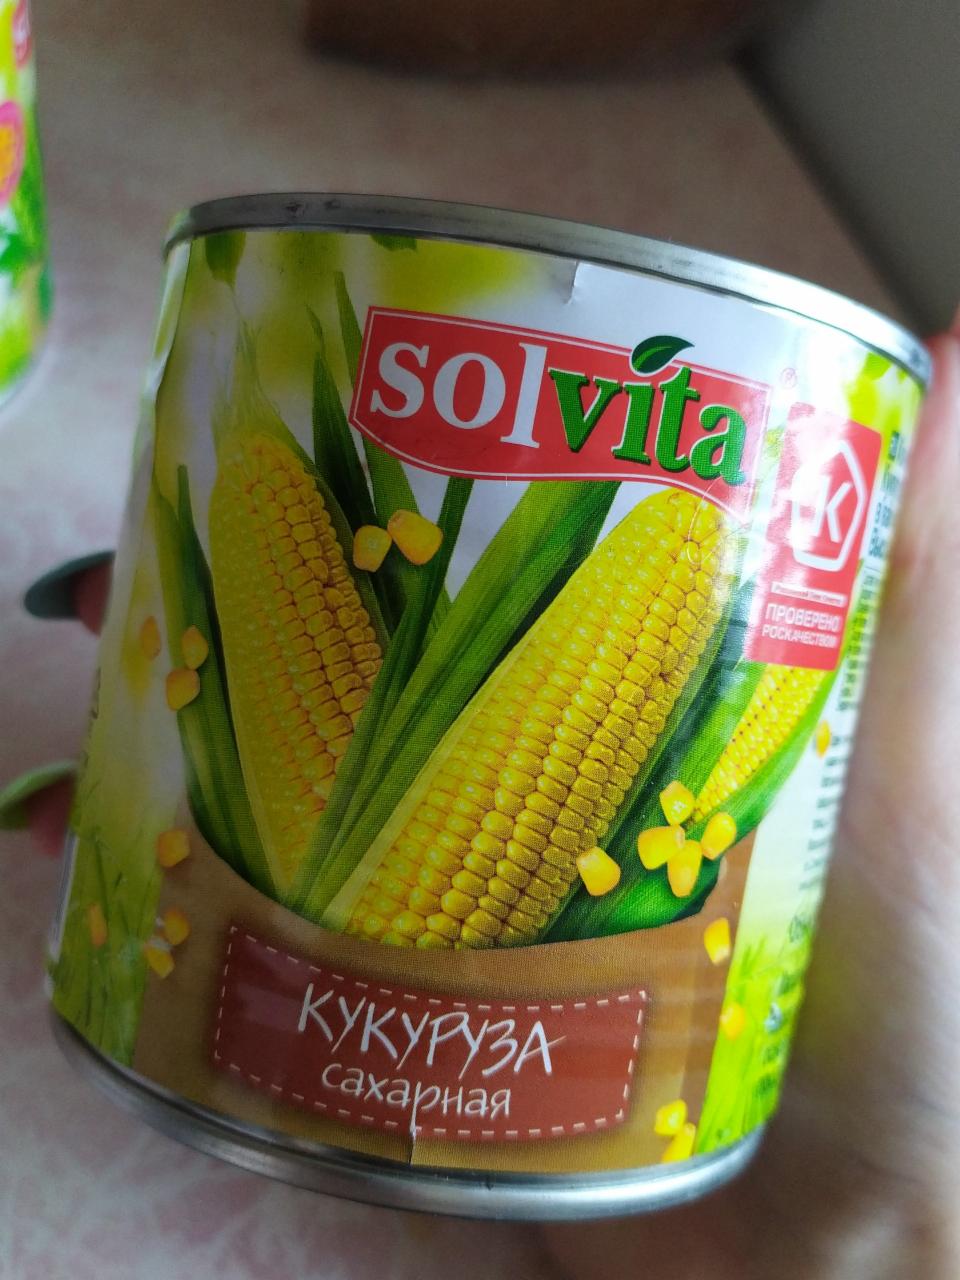 Фото - кукуруза сахарная solvita 